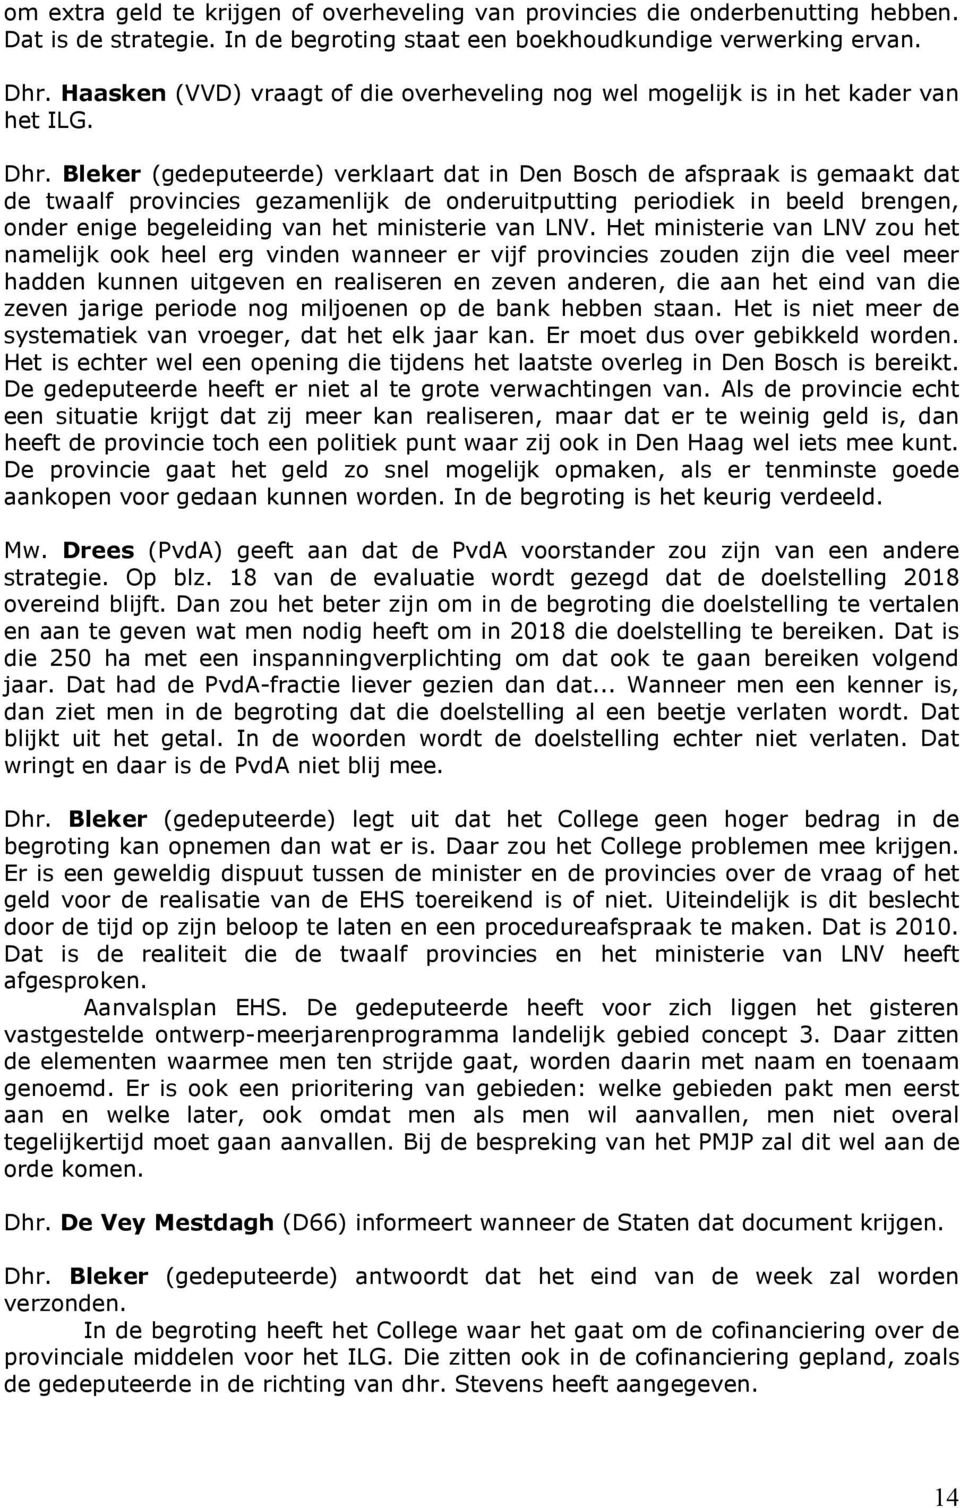 Bleker (gedeputeerde) verklaart dat in Den Bosch de afspraak is gemaakt dat de twaalf provincies gezamenlijk de onderuitputting periodiek in beeld brengen, onder enige begeleiding van het ministerie